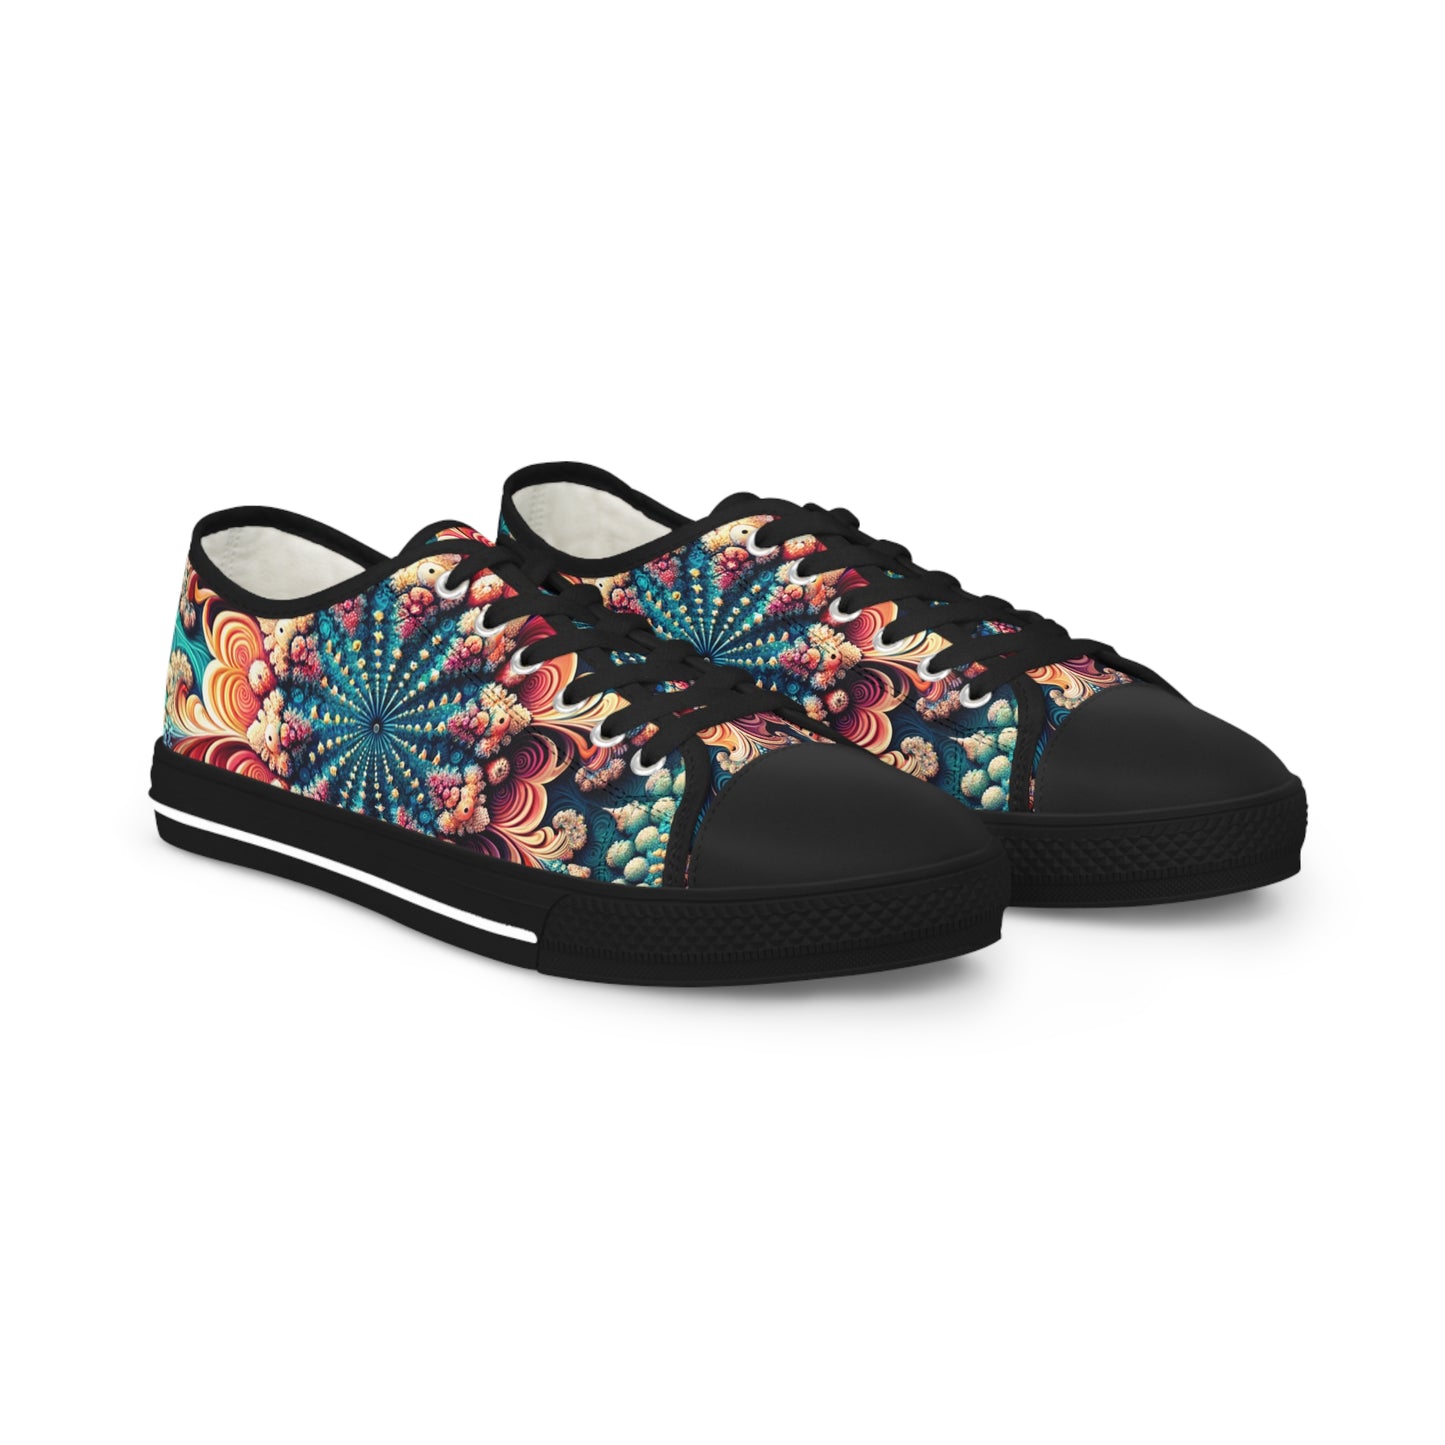 Coral Mandala Whirl Pattern Low Top Sneakers - Men's